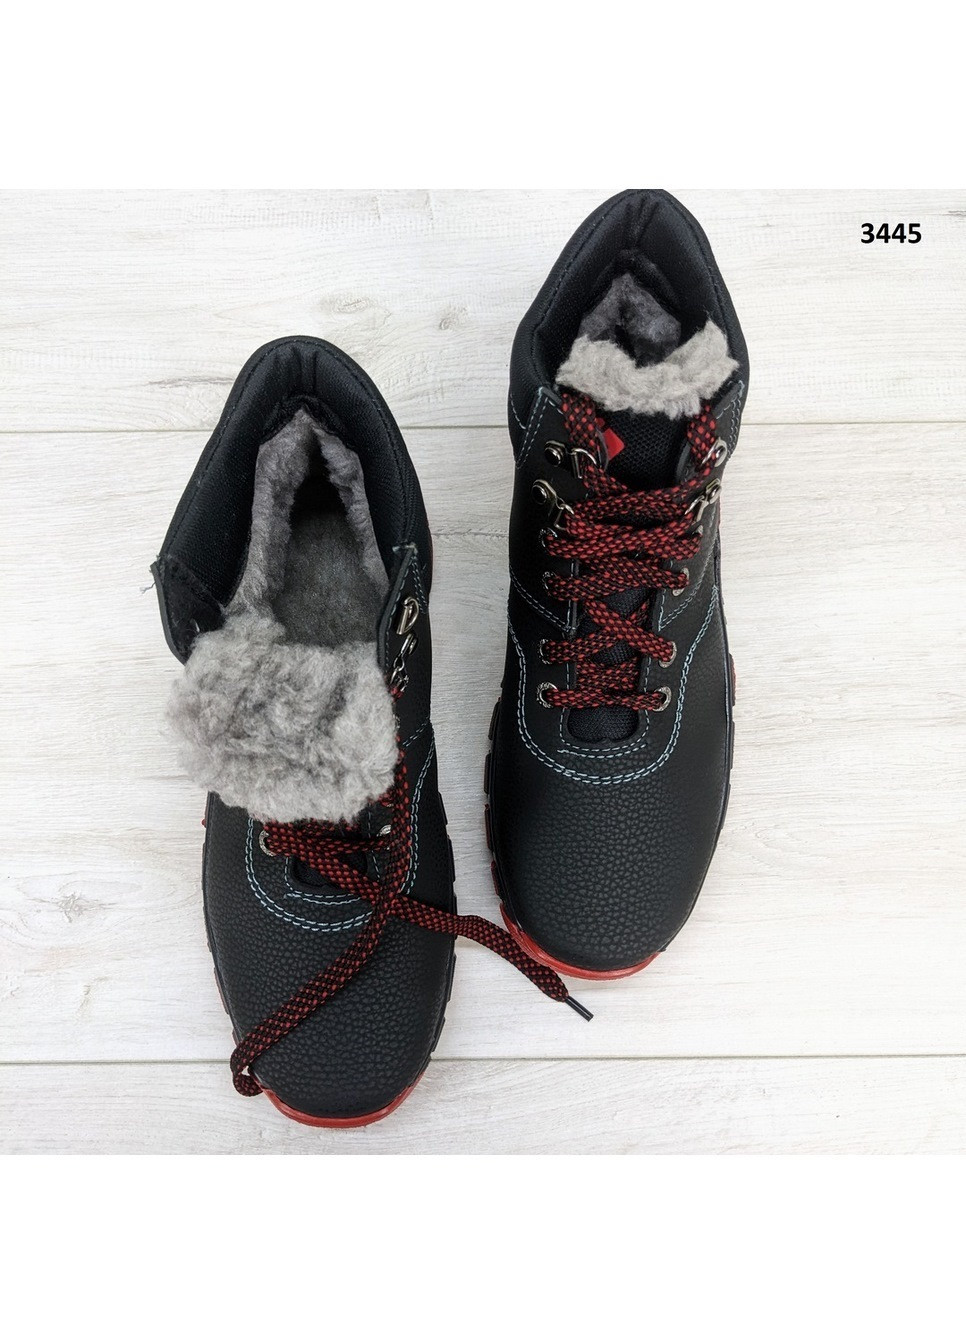 Черные зимние ботинки мужские зимние Kluchkovskyy